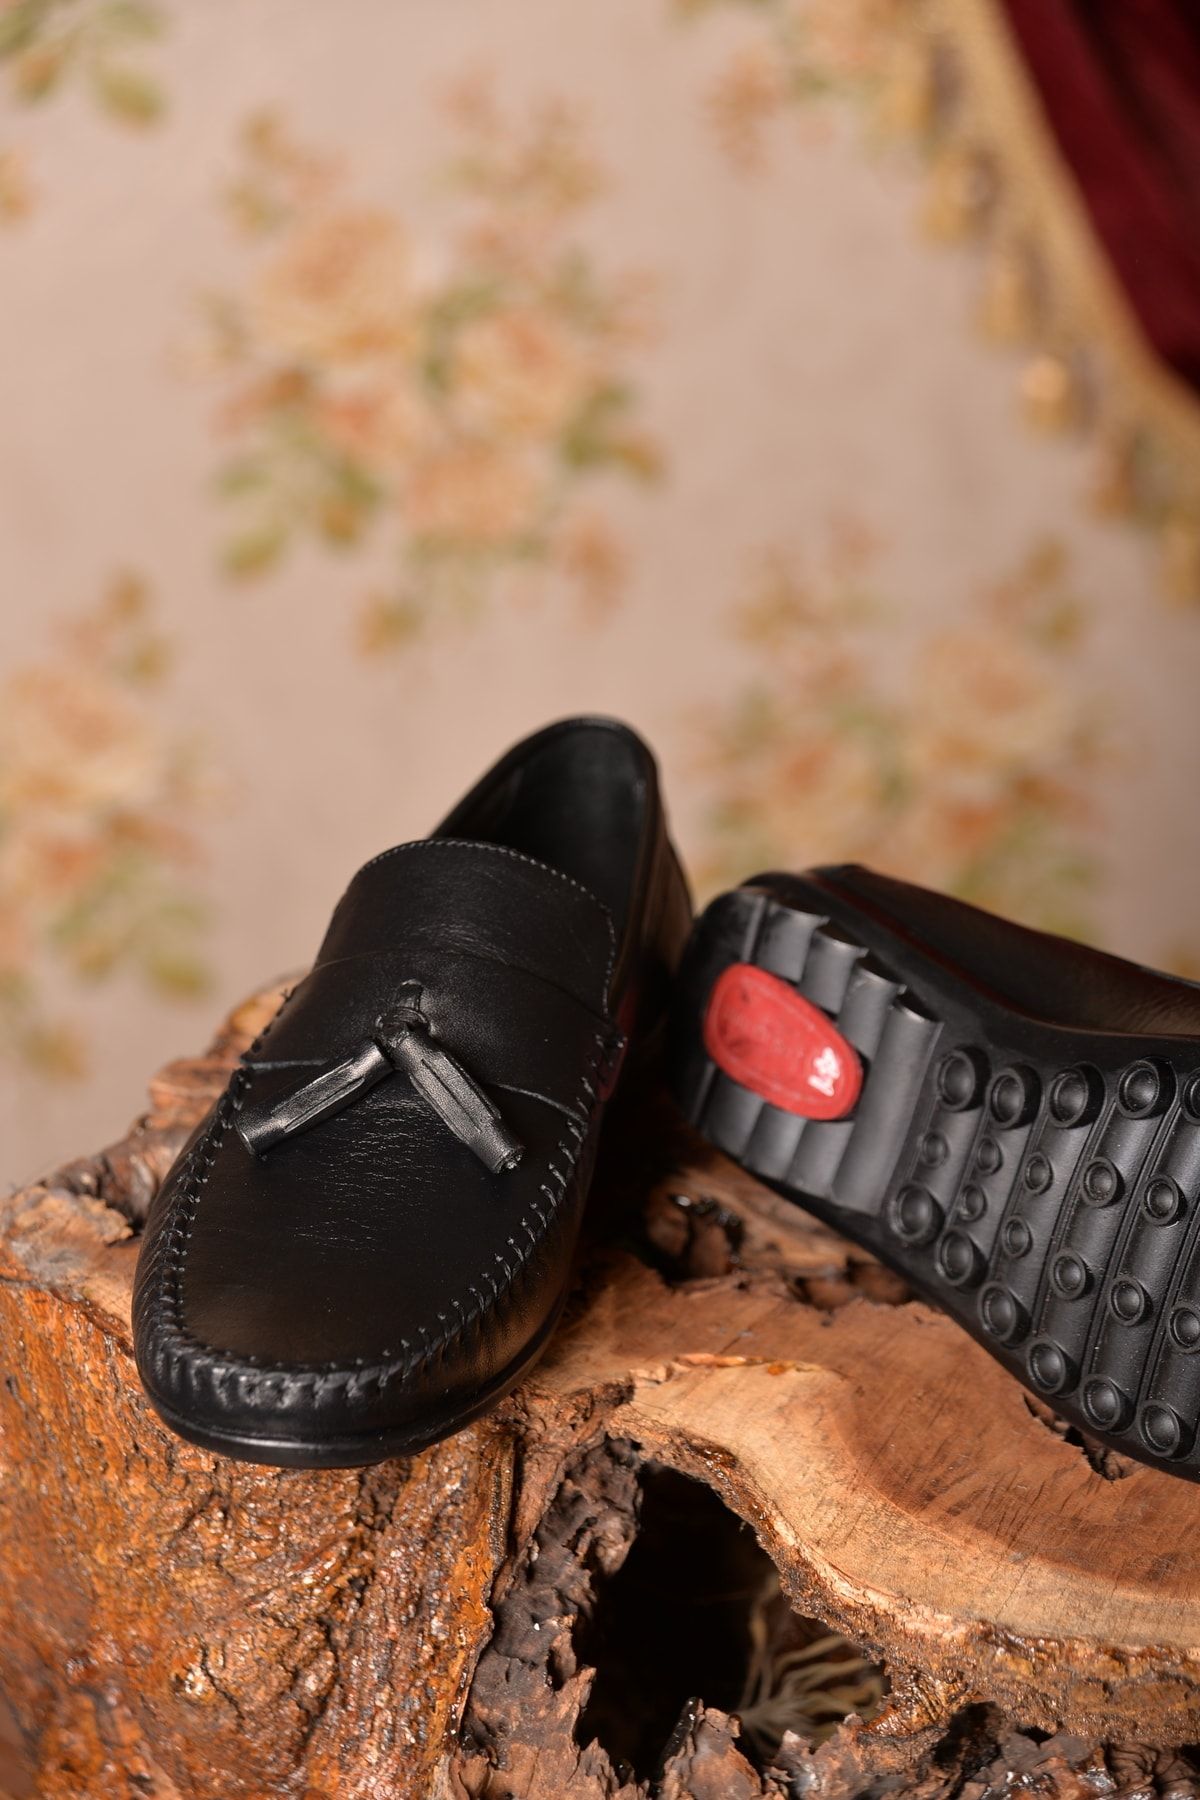 Dunlop Erkek %100 Deri Siyah Loafer Ayakkabı Yenilikçi Tarzıyla Şıklığı Ve Konforu Bir Arada Sunan Model